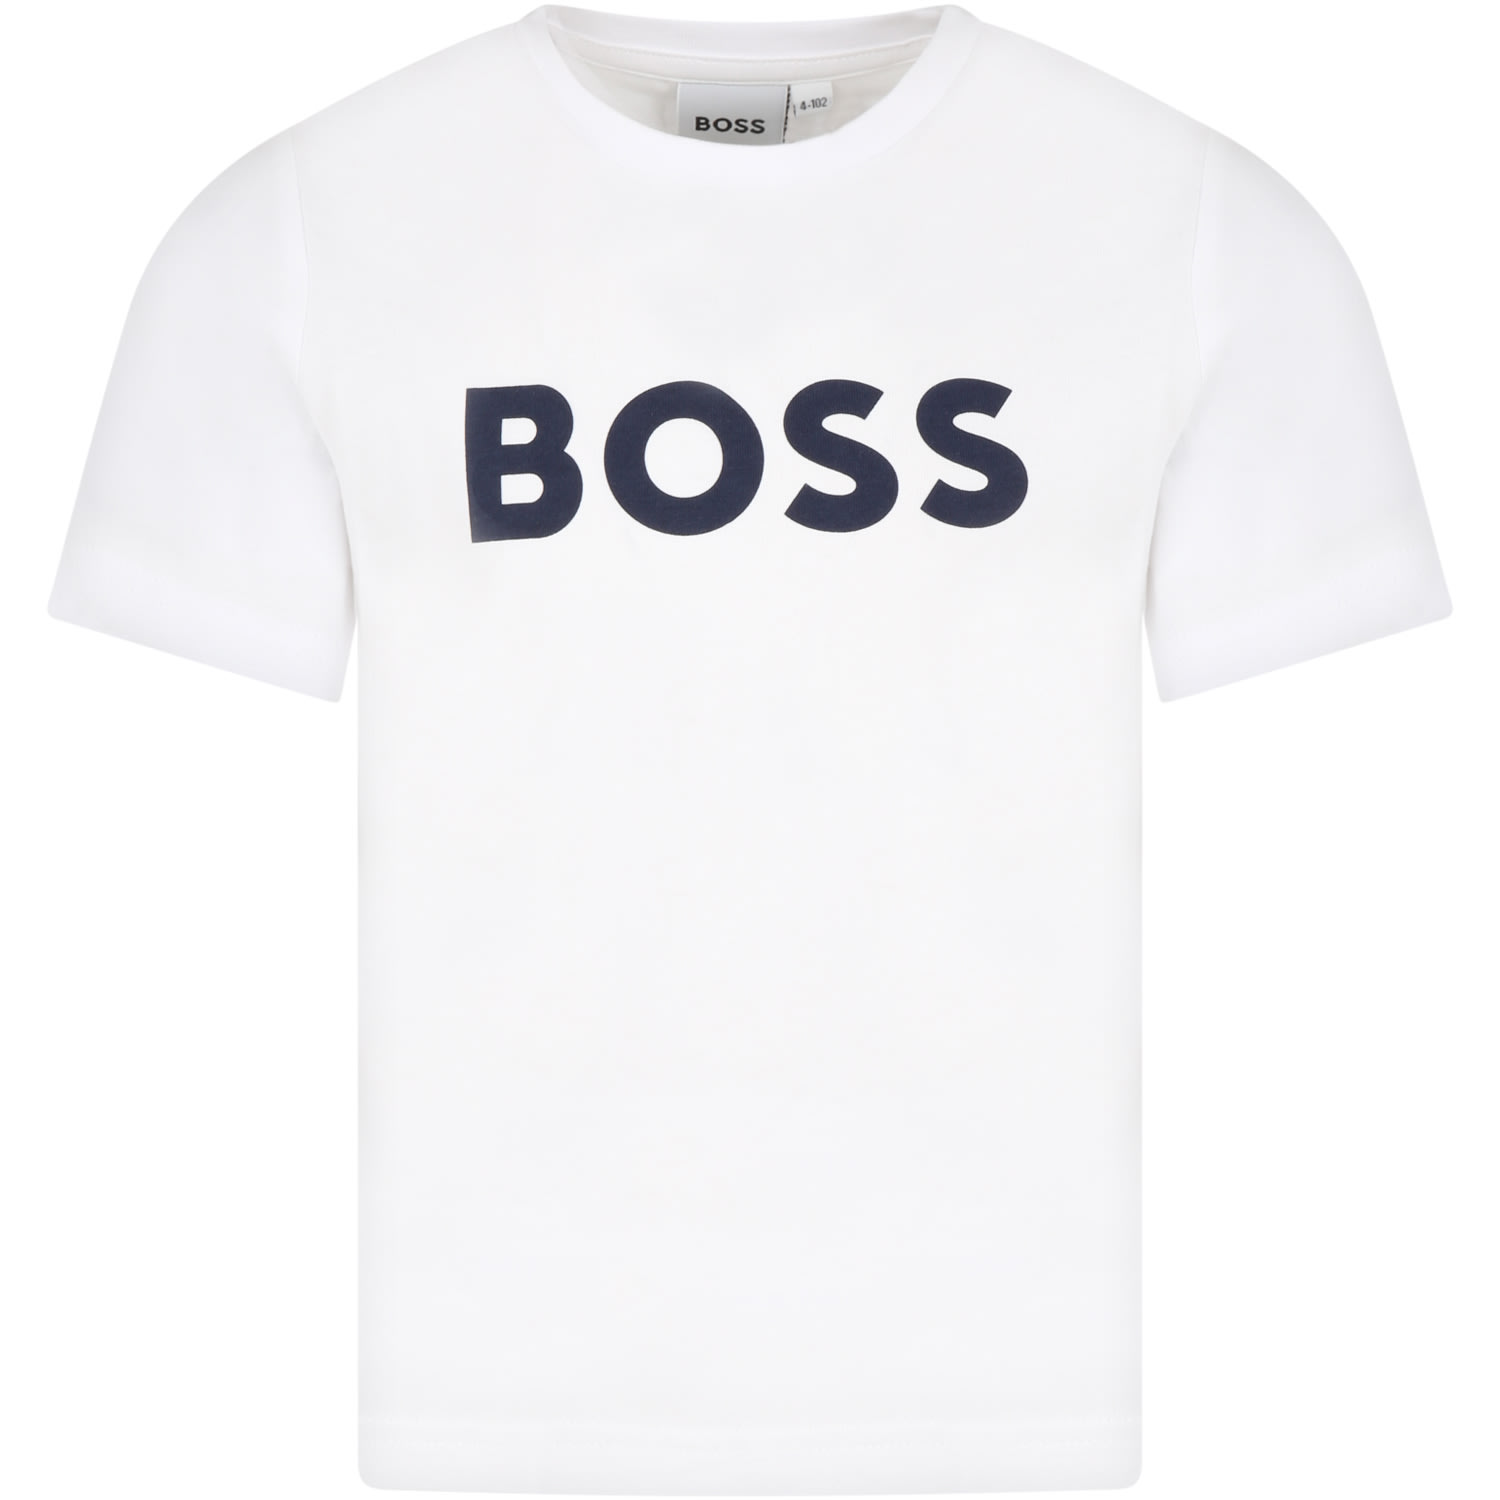 Hugo Boss Kids' White T-shirt For Boy With Logo